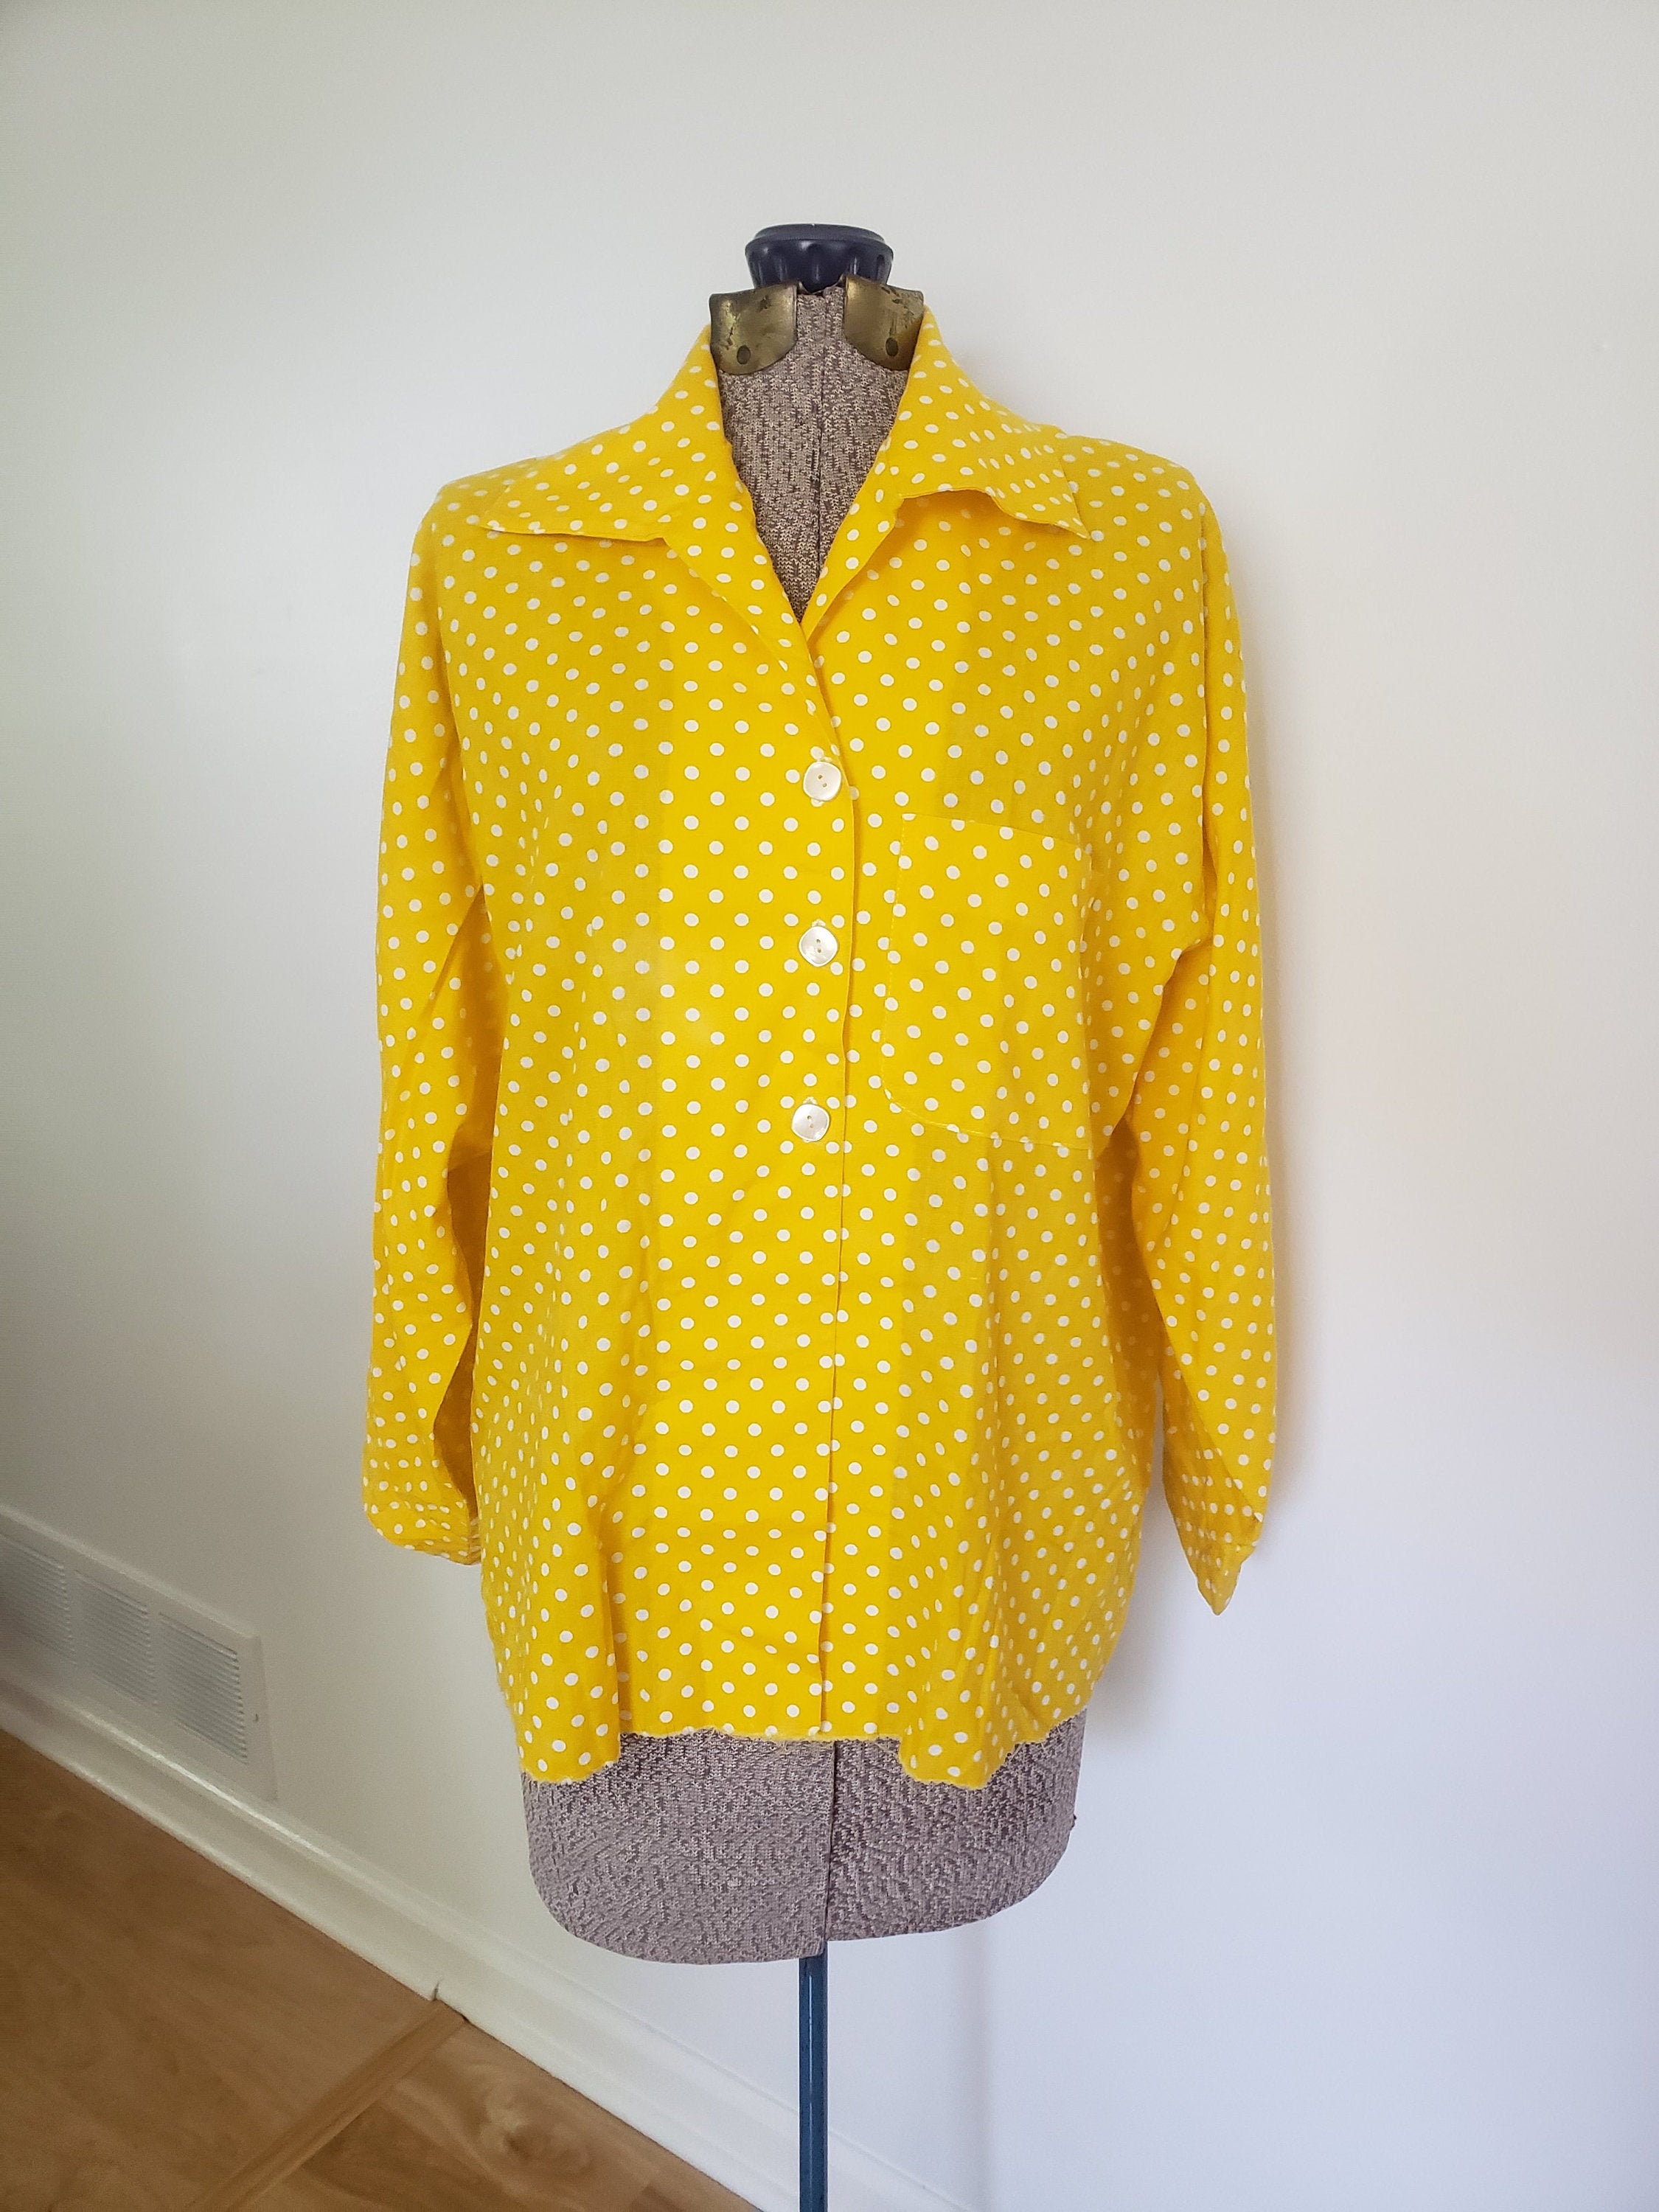 Vintage Yellow & White Polka Dot Shirt Retro 1950's | Etsy